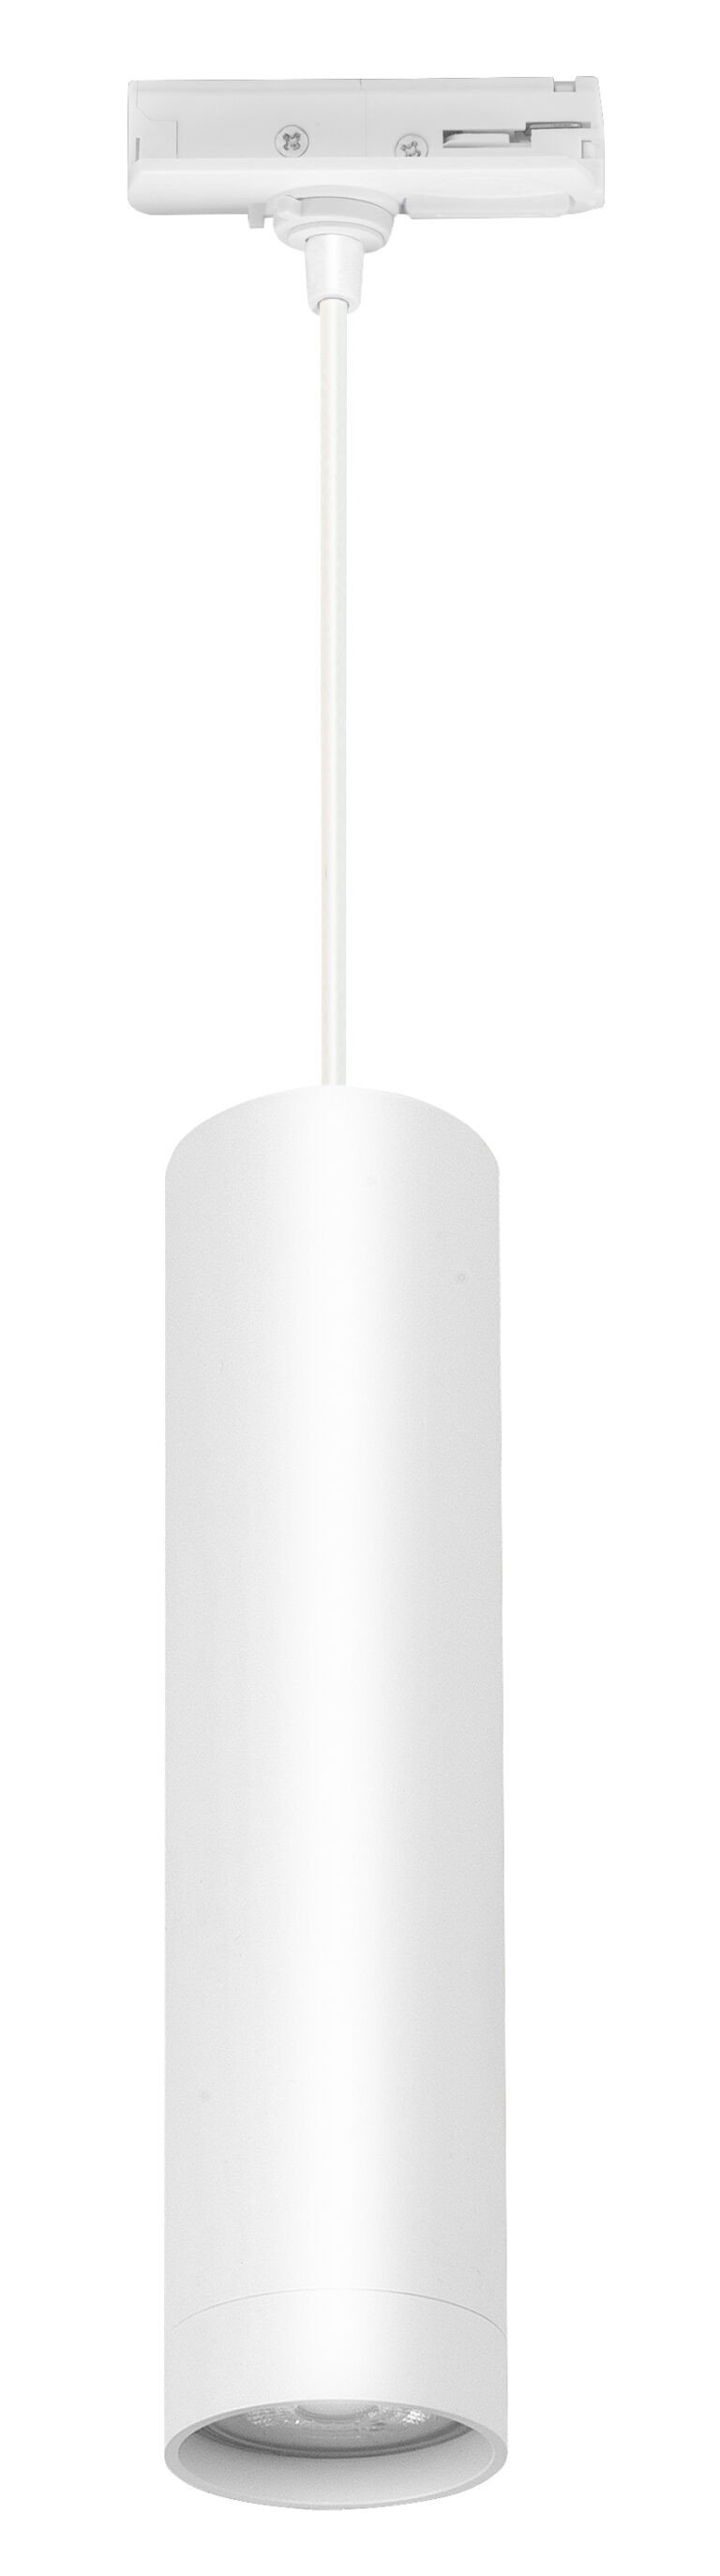 Hanglamp wit met adapter